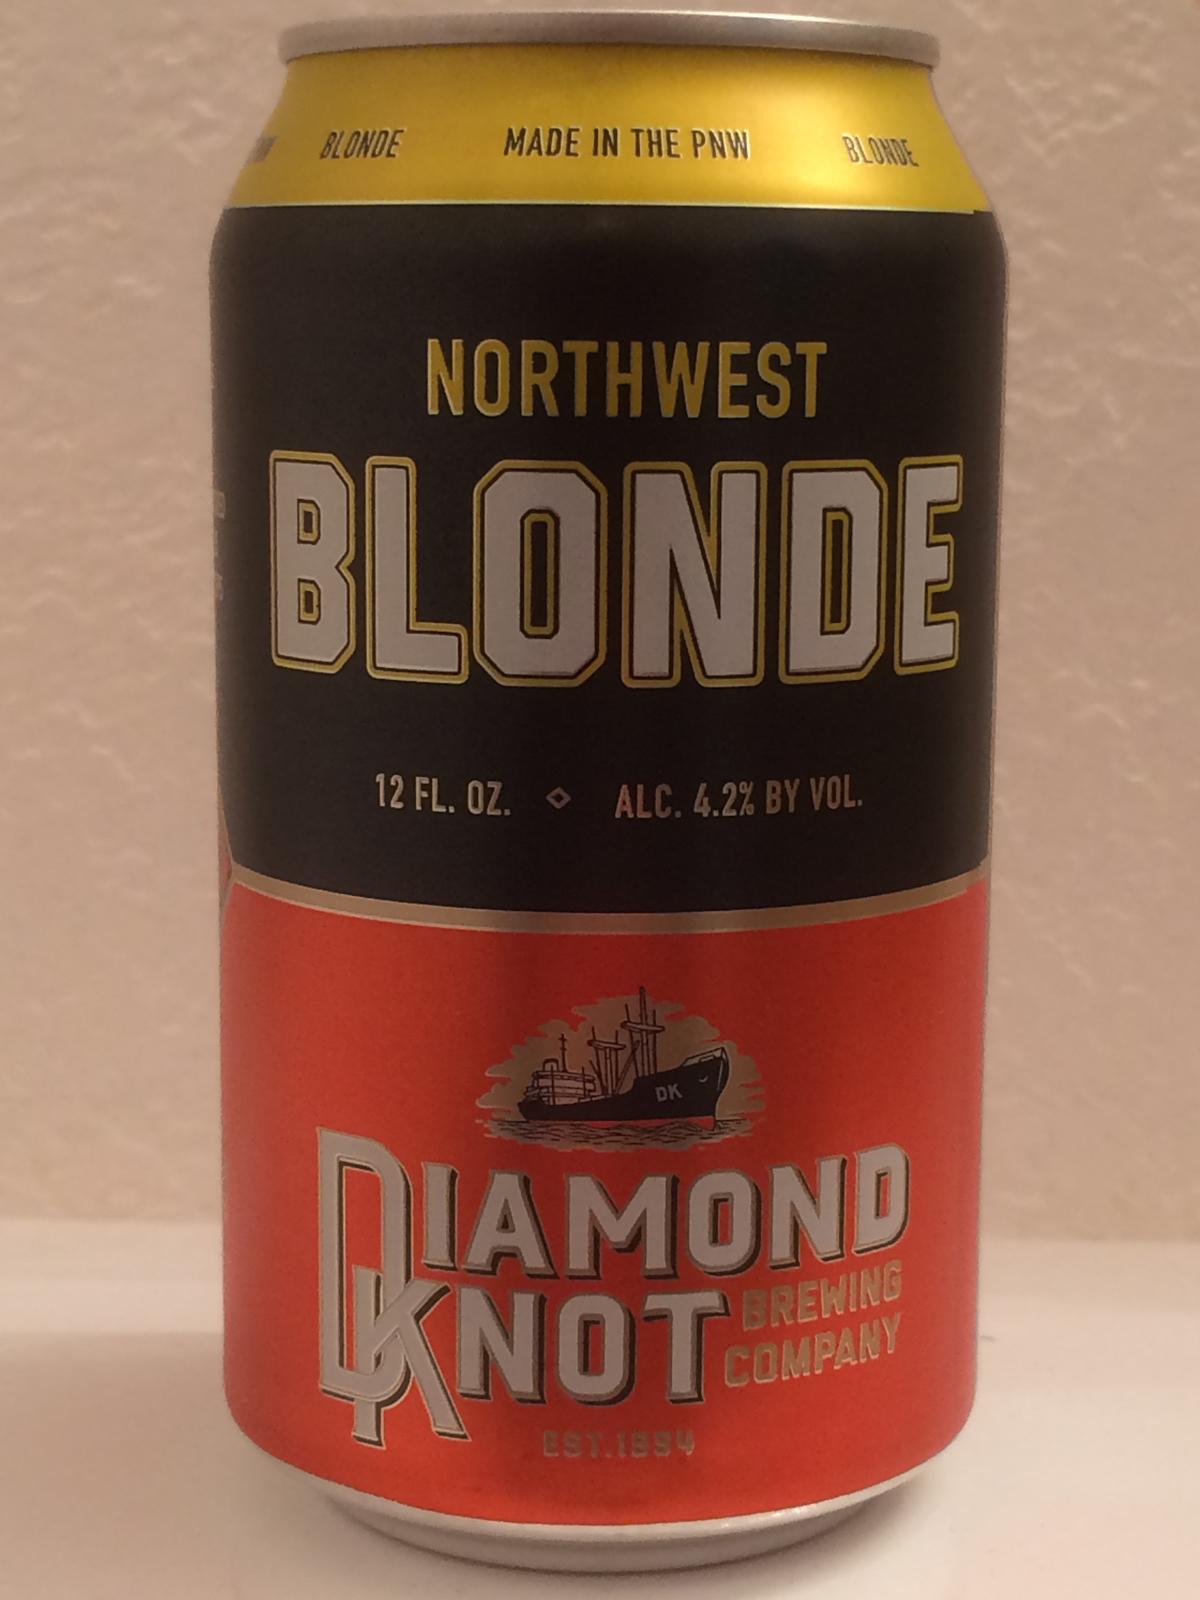 Northwest Blonde